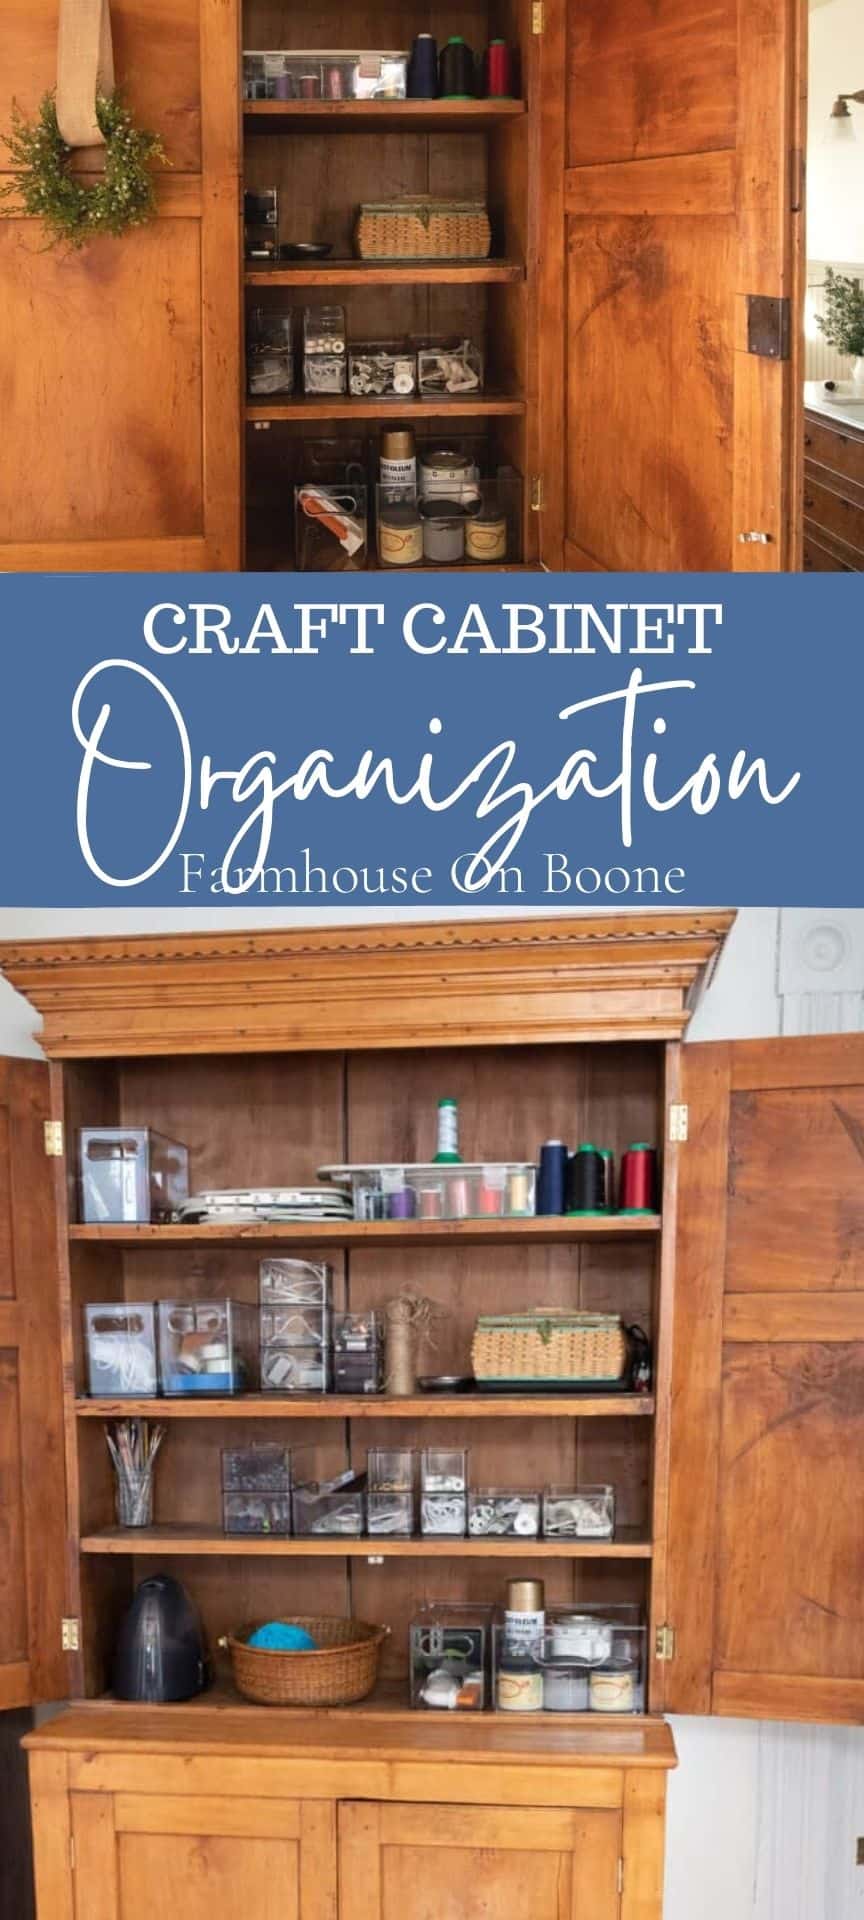 Cabinet Organization & Interiors - Kitchen Craft